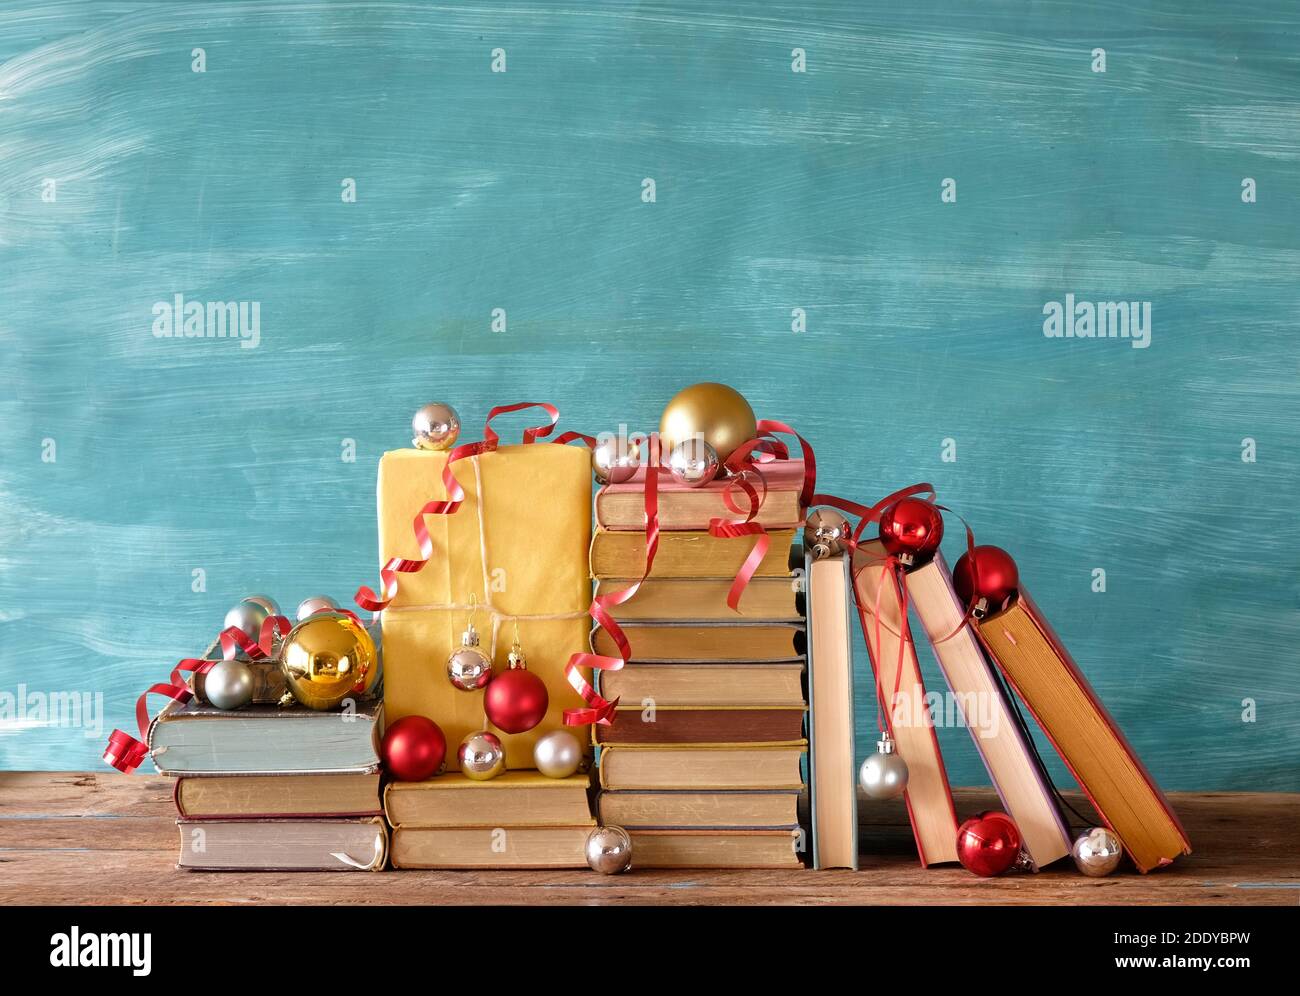 Bücher als weihnachtsgeschenk, weihnachtsgeschenk, Lesen, Literatur, Bildung, weihnachten, Urlaub, so dass ein Geschenk-Konzept Stockfoto